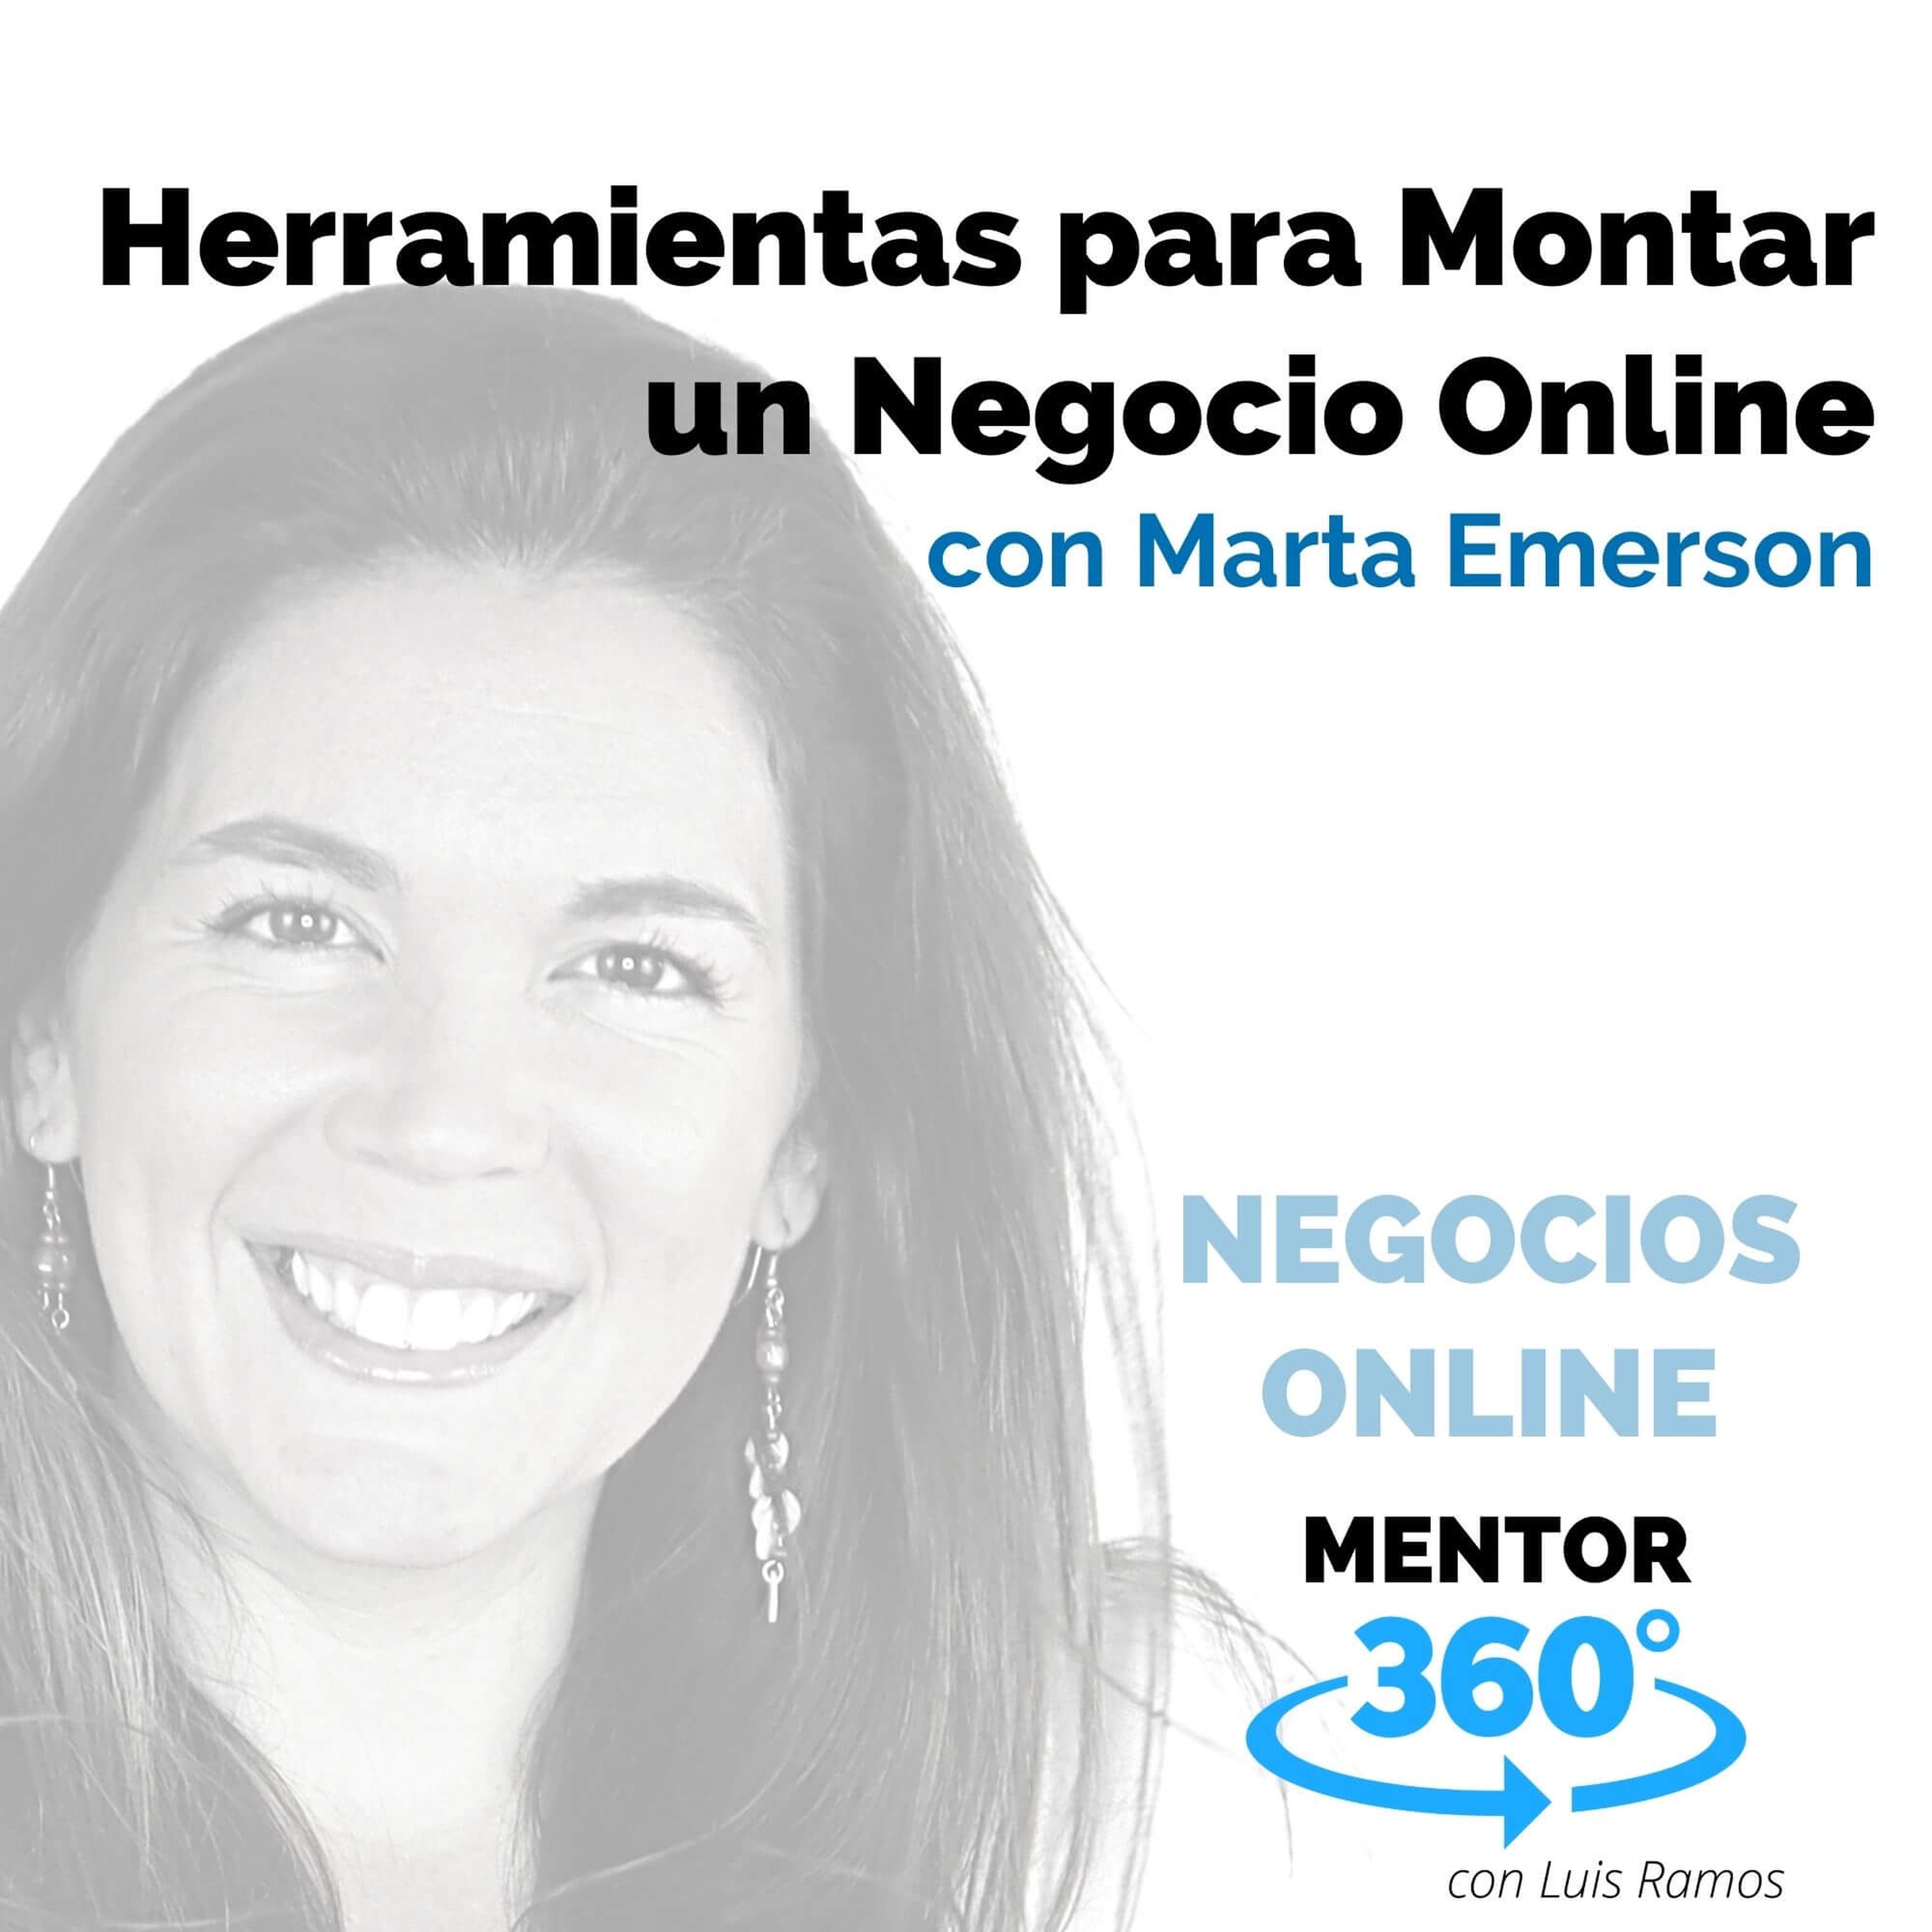 Herramientas para Montar un Negocio Online, con Marta Emerson - MENTOR360